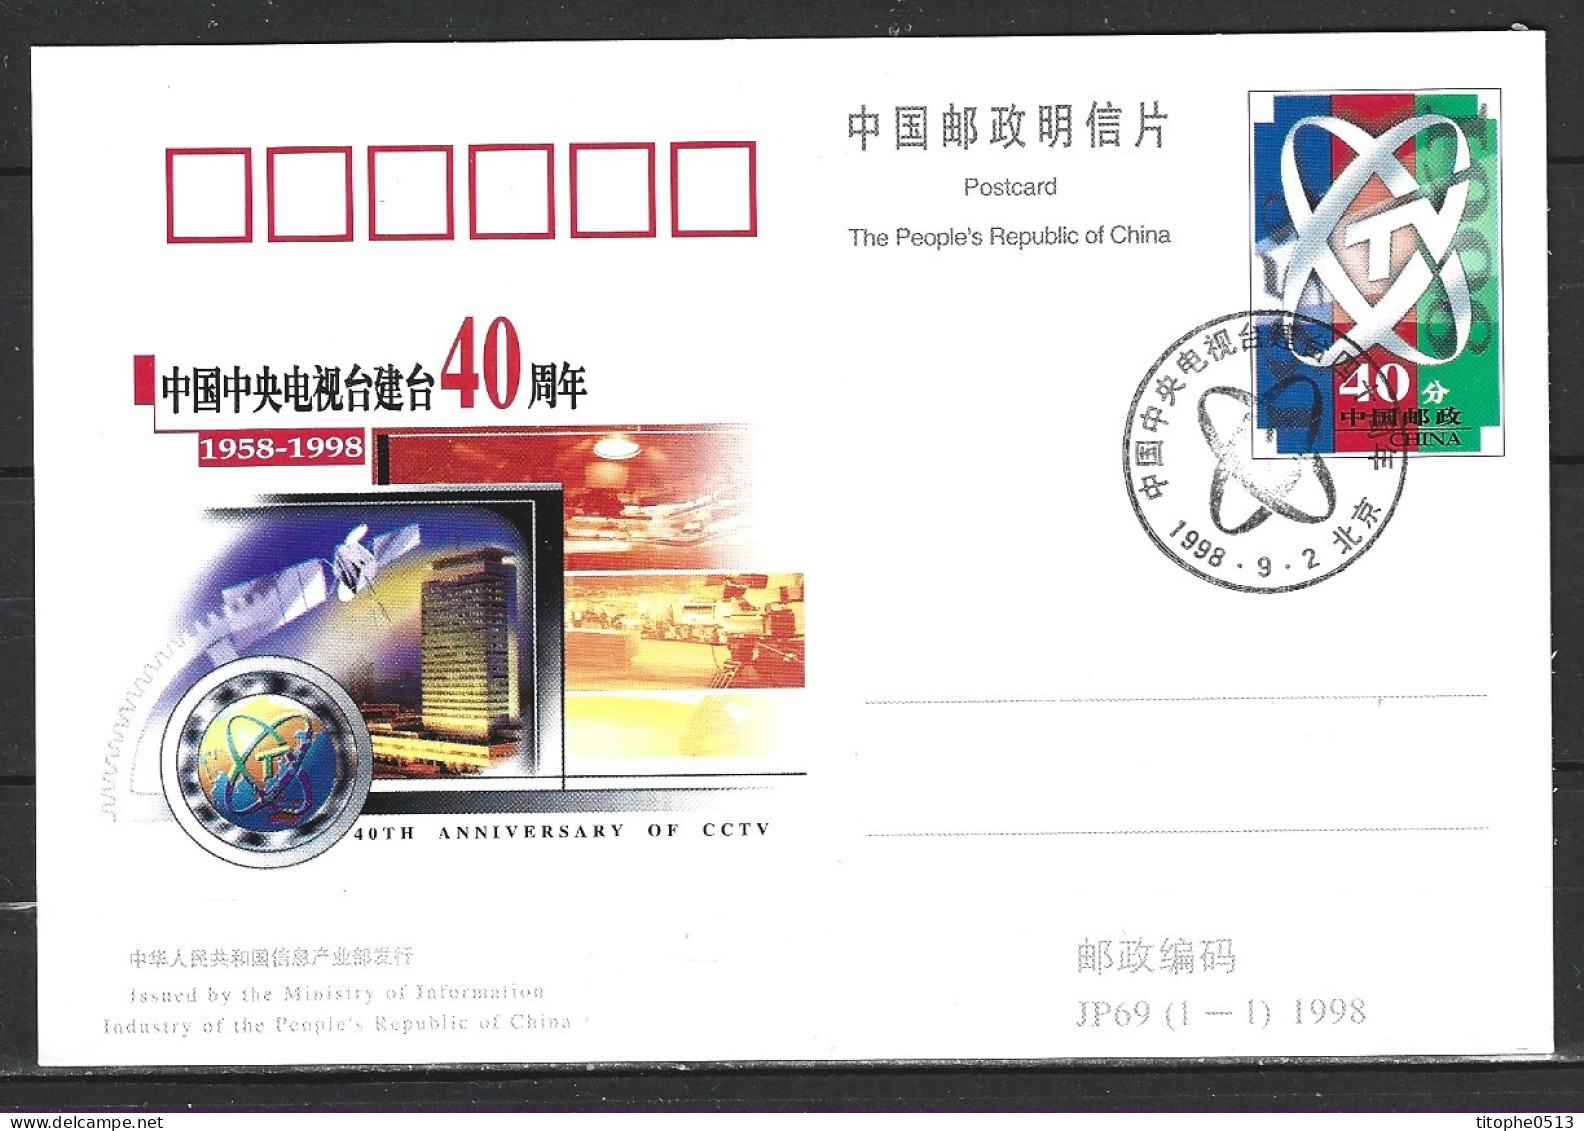 CHINE. Entier Postal De 1998 Avec Oblitération 1er Jour. Télévision Chinoise/Satellite. - Telecom